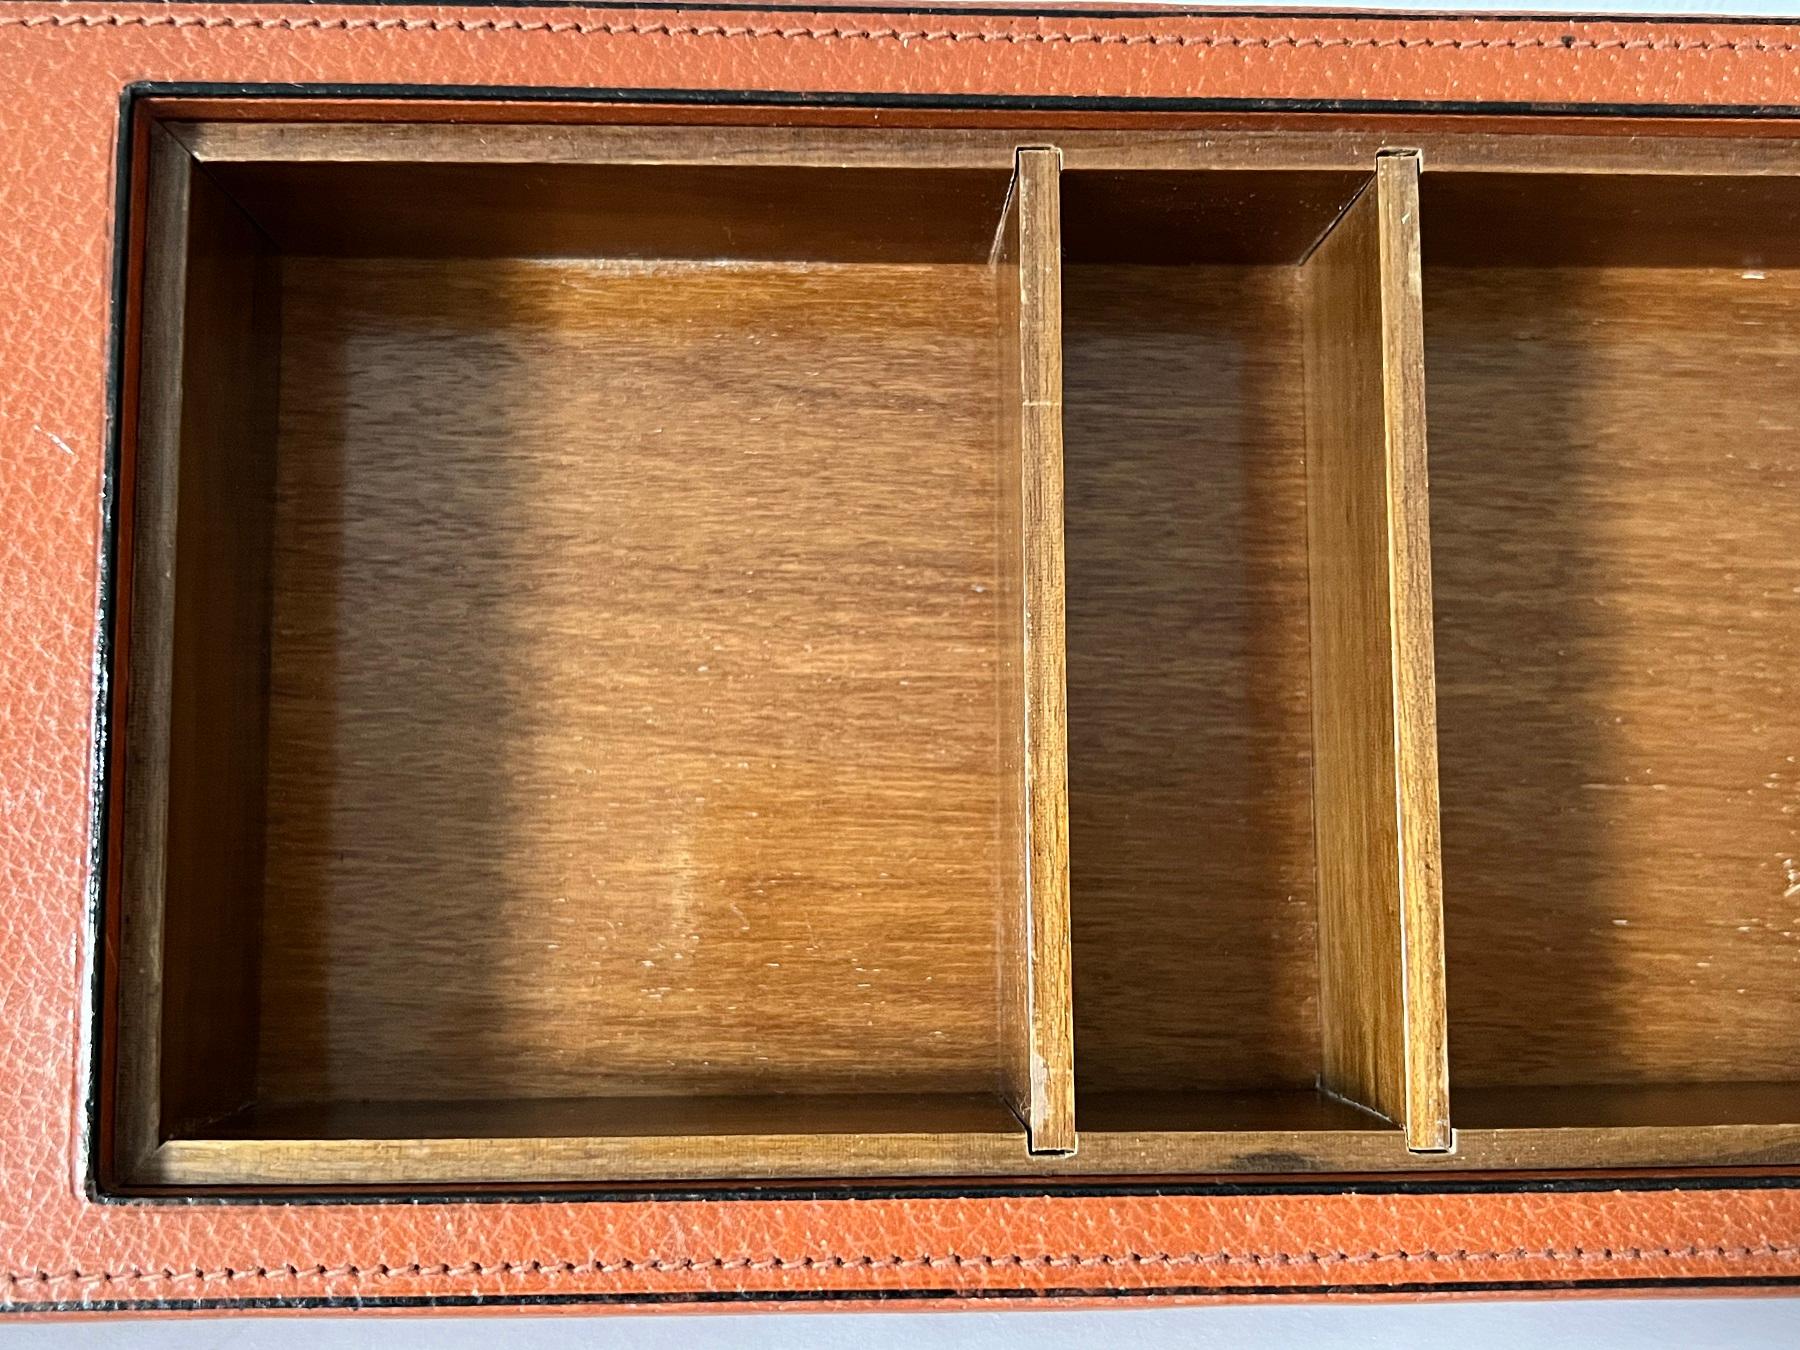 Schöne Schreibtischbox oder Schatulle aus Leder und geschliffenem Glas. 
Made in Italy in den 1970er Jahren.
Die Schachtel ist mit Glattleder, einer feinen schwarzen Lederkante und fein gearbeiteten Nähten ausgestattet. 
Die Schatulle hat ein mit